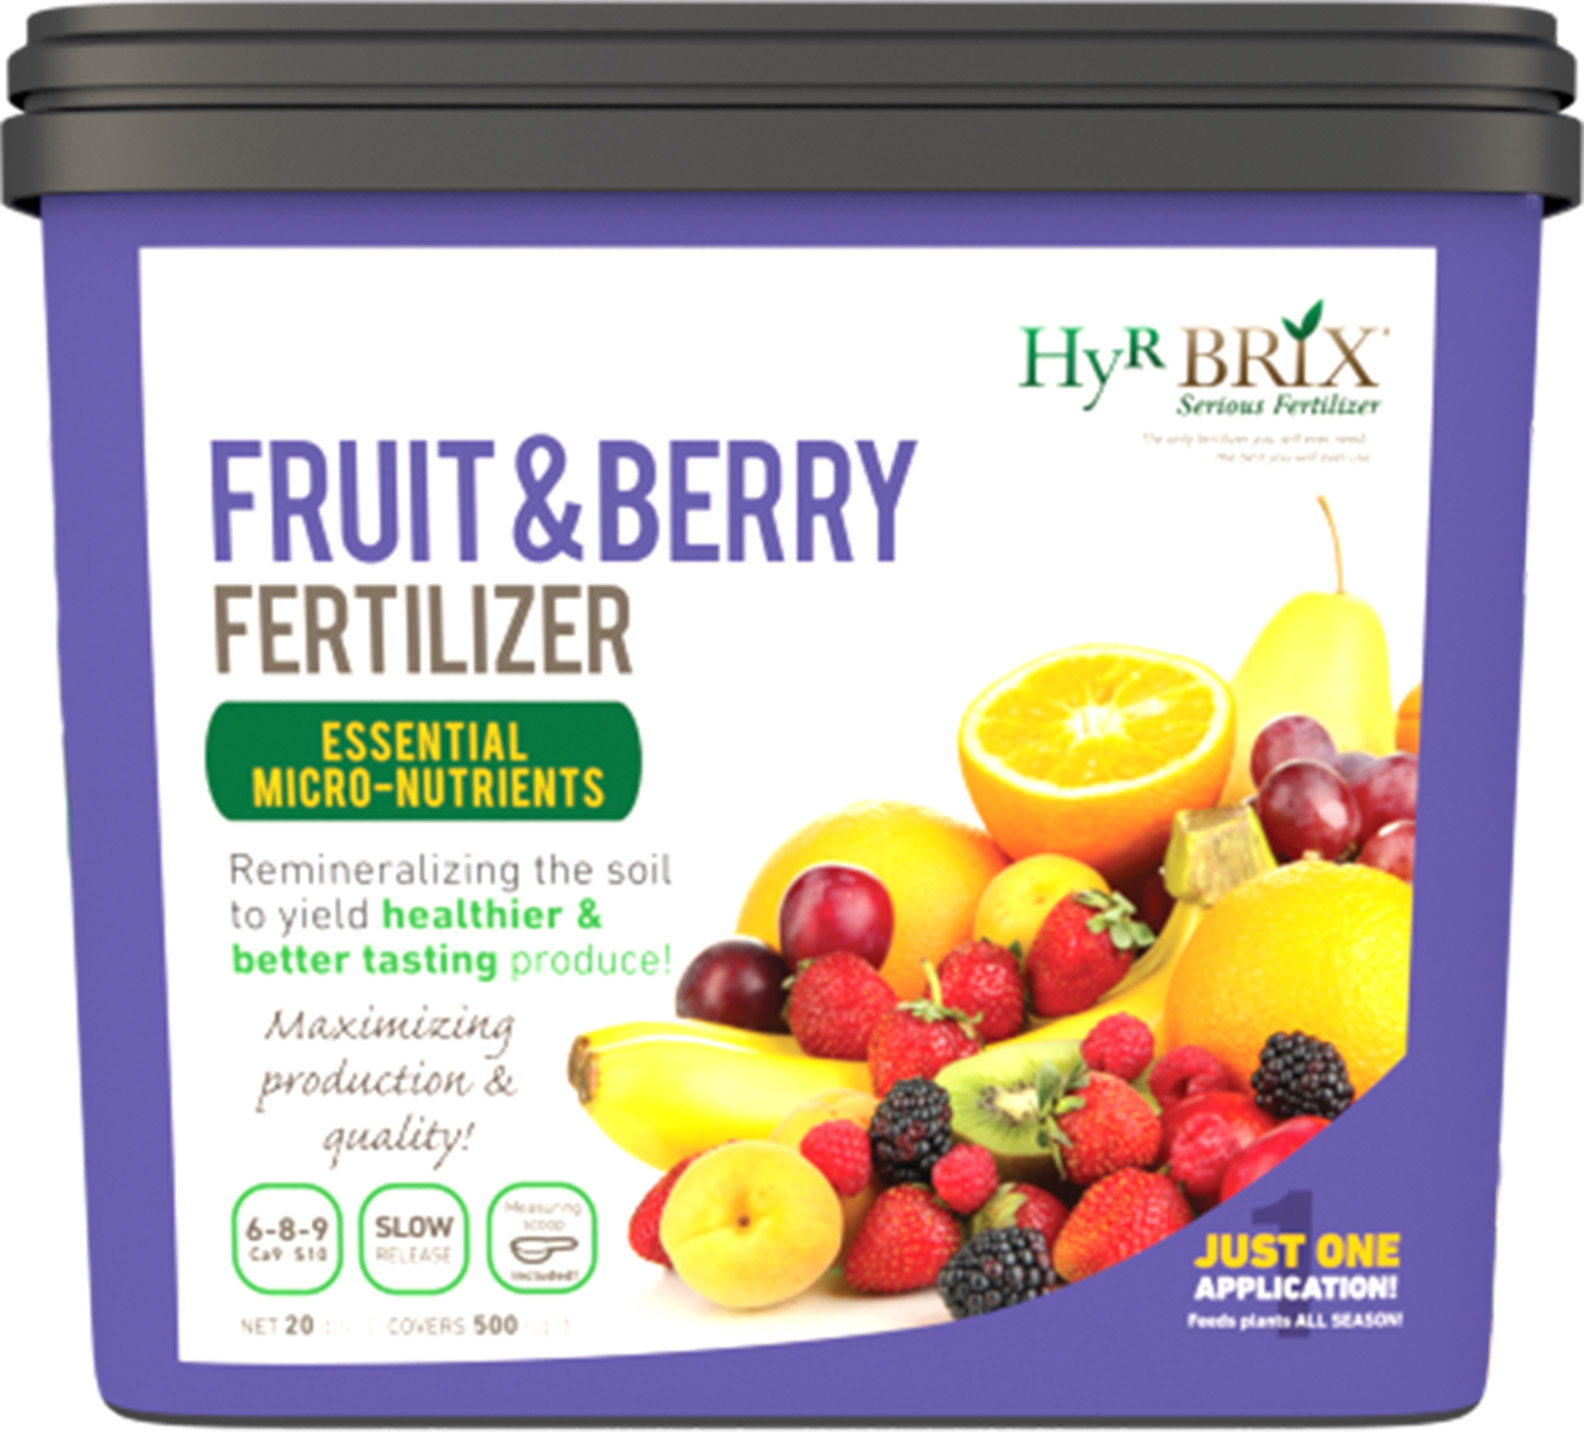 HyR BRIX® Fruit & Berry Fertilizer 6-8-9 Ca9 S10- 20 lb Pail - Fertilizers